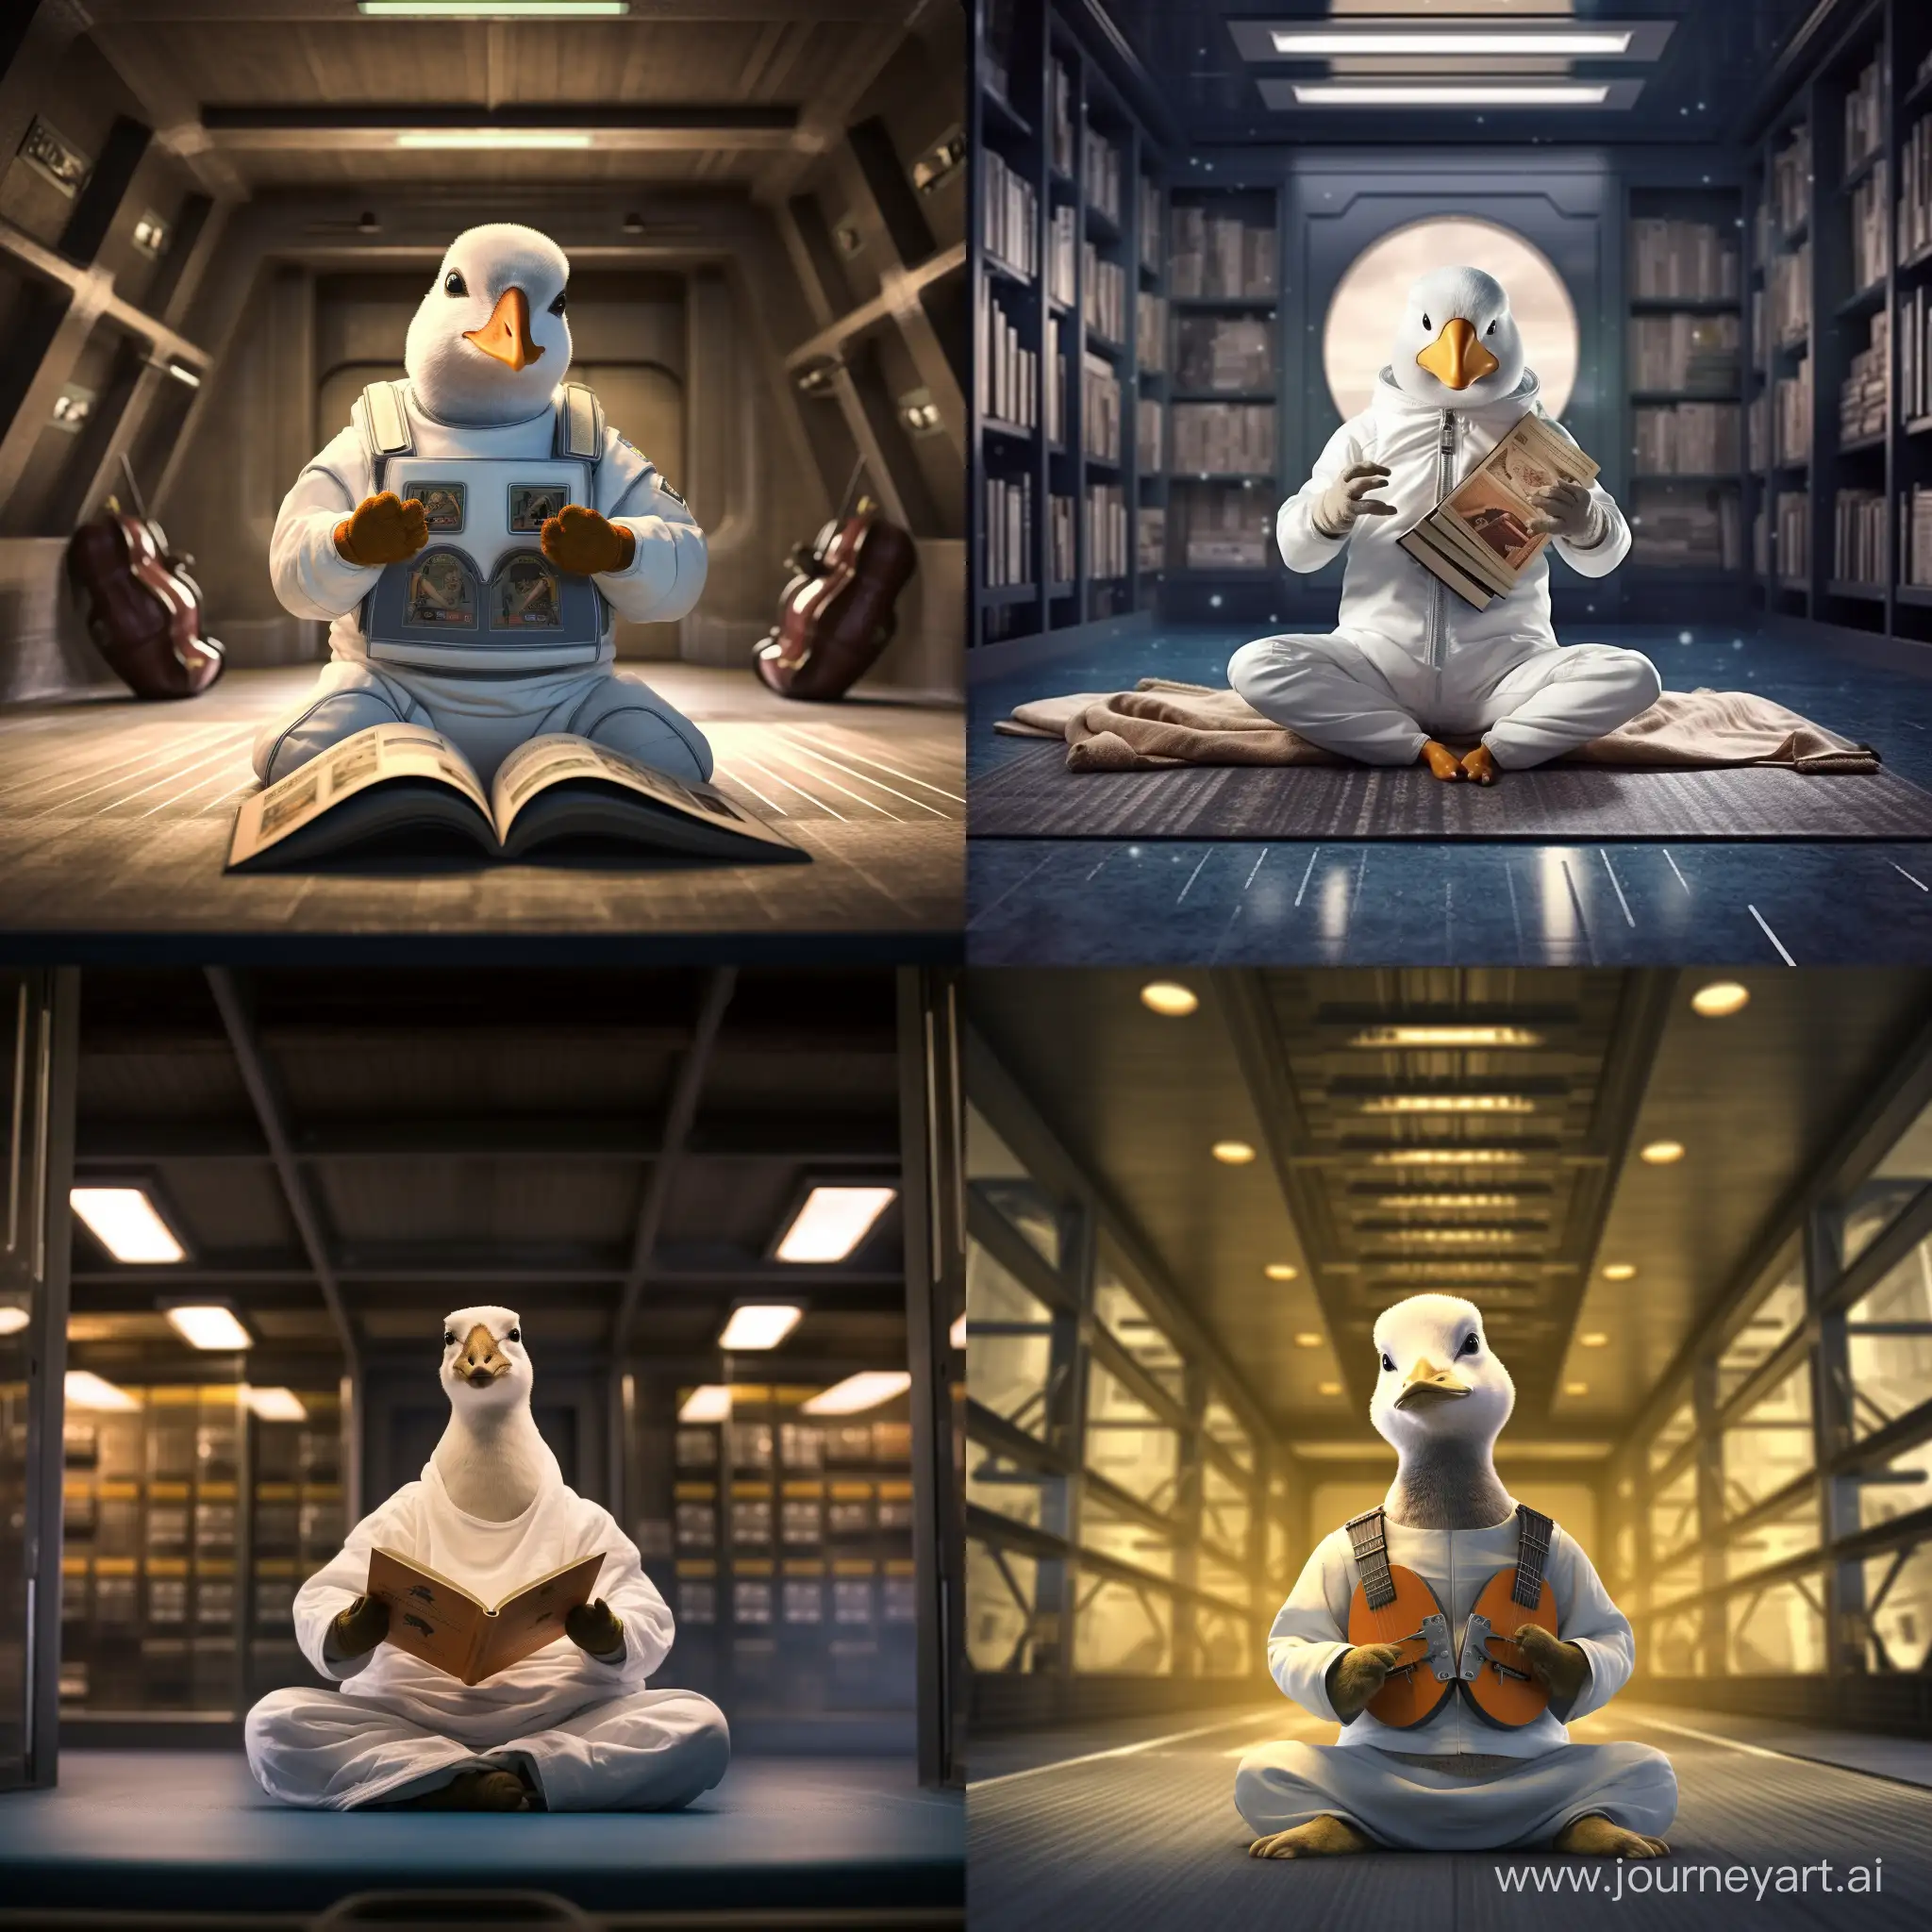 Un pato que practica yoga en una biblioteca de astronautas
